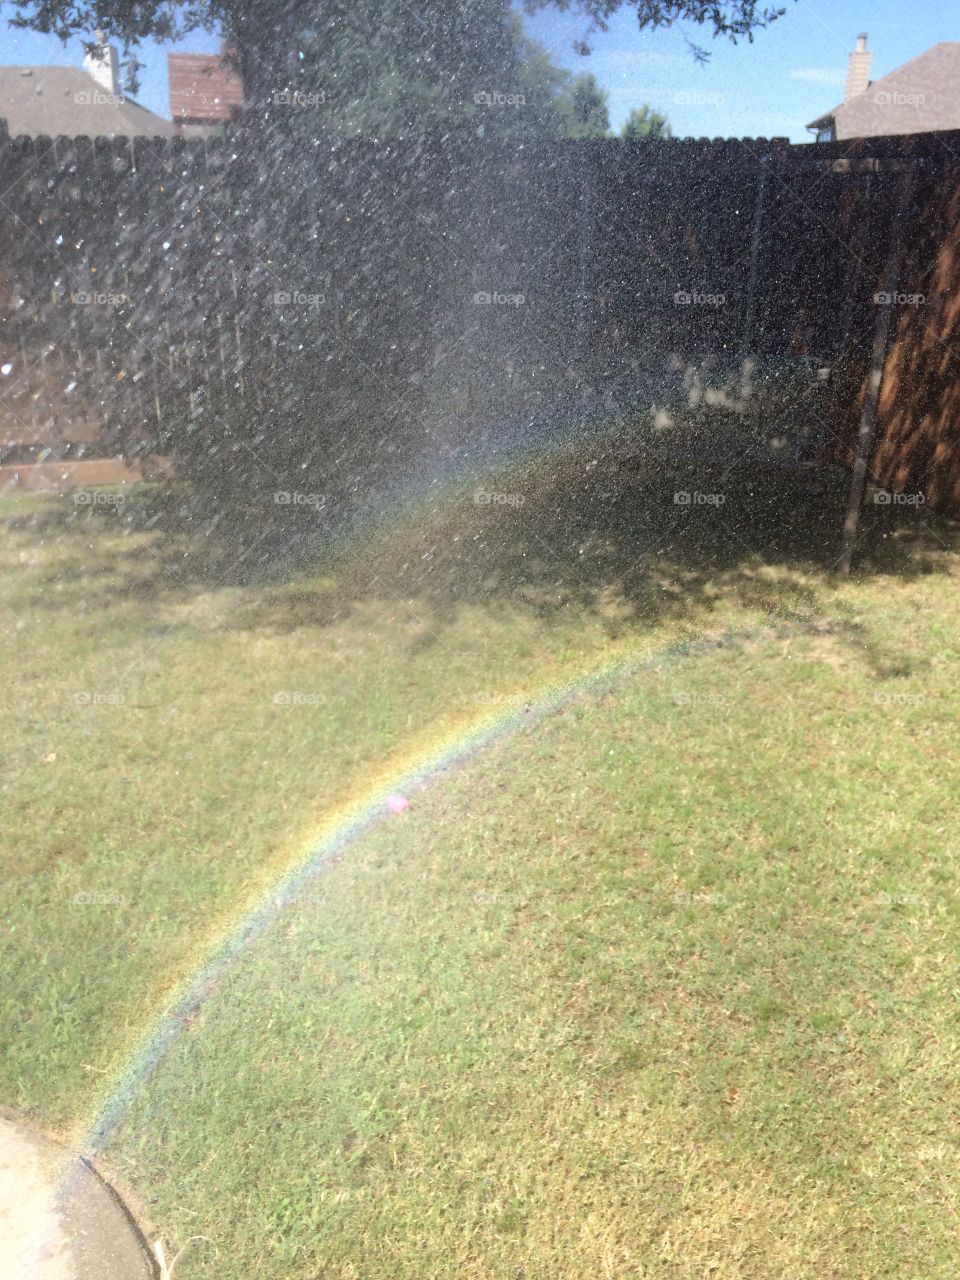 Sprinkle rainbow